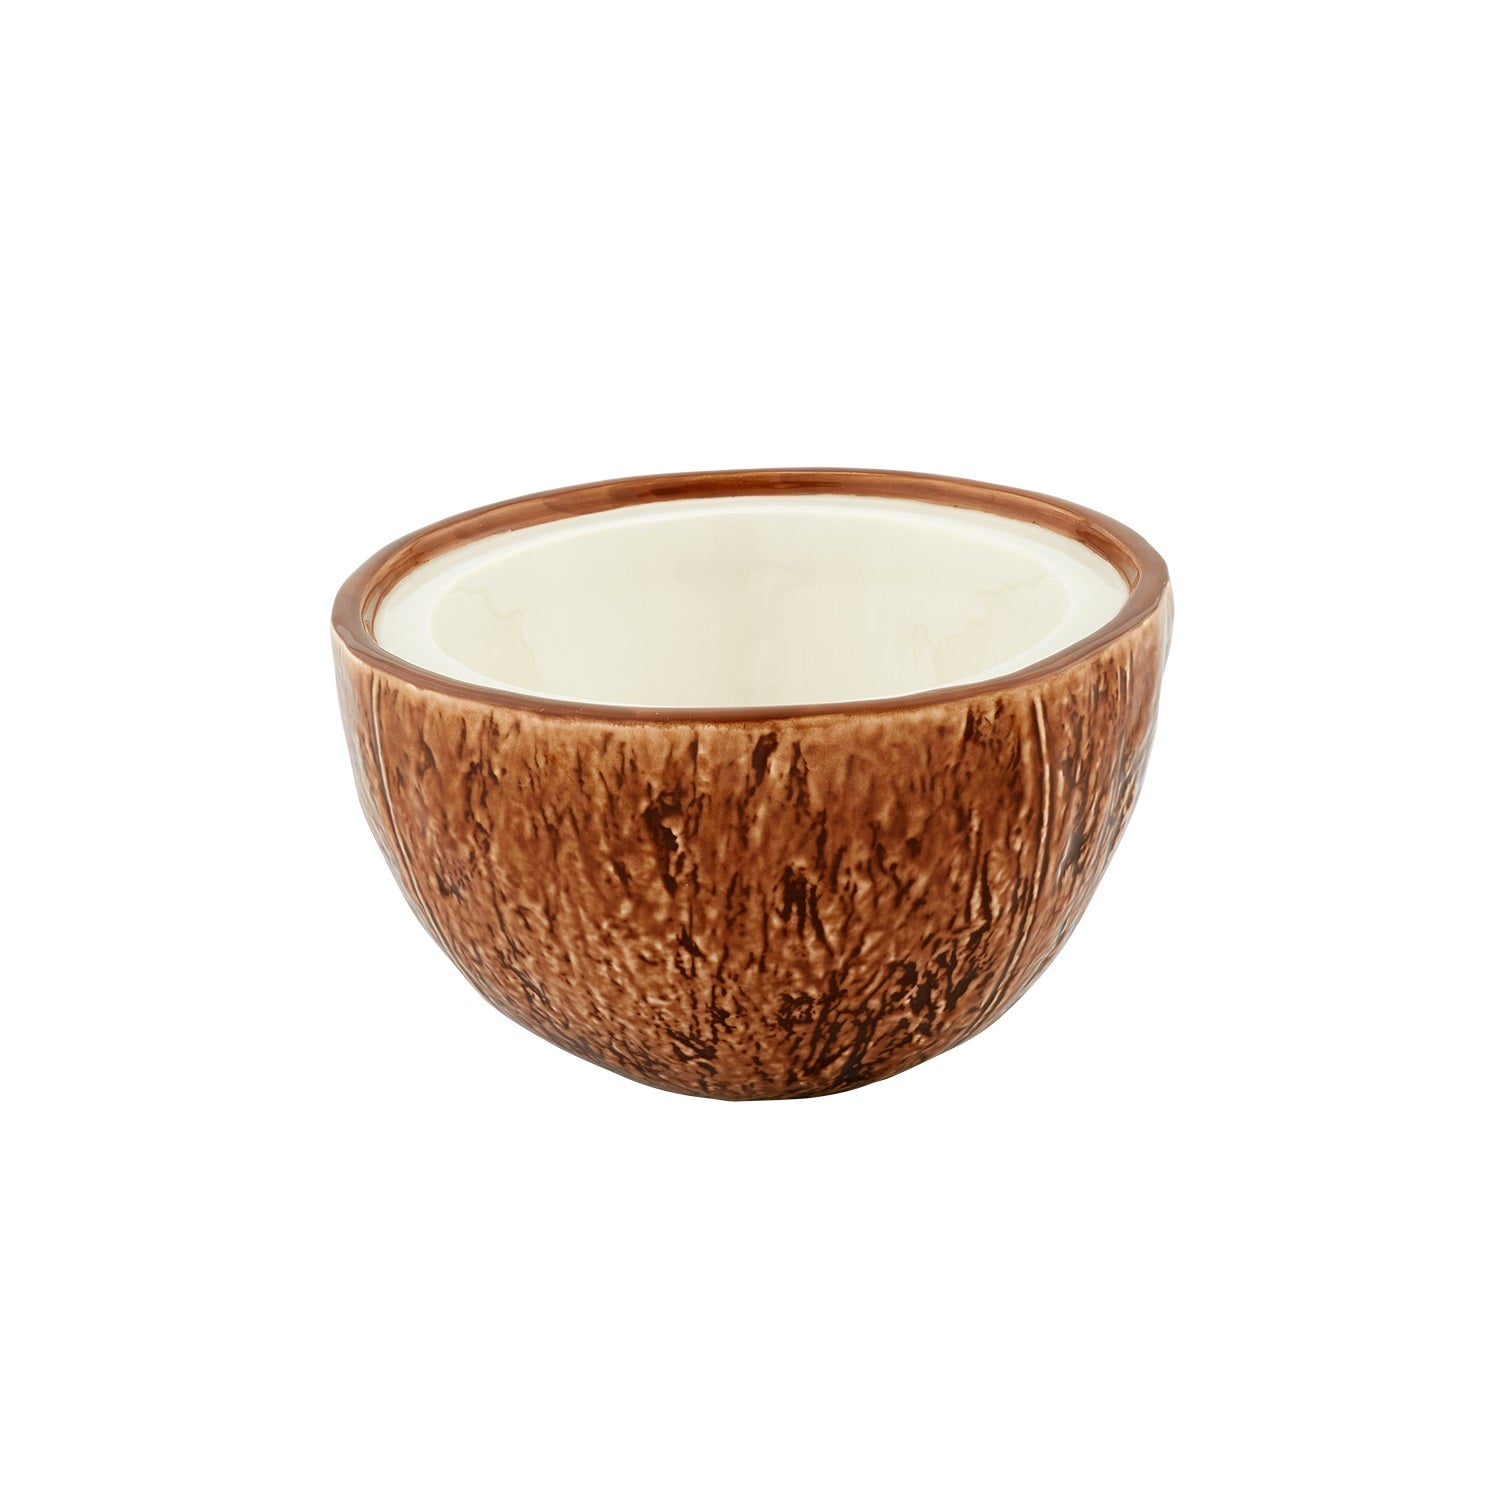 Bordallo Pinheiro Frutos Tropicais Coconut Box, 20 cm